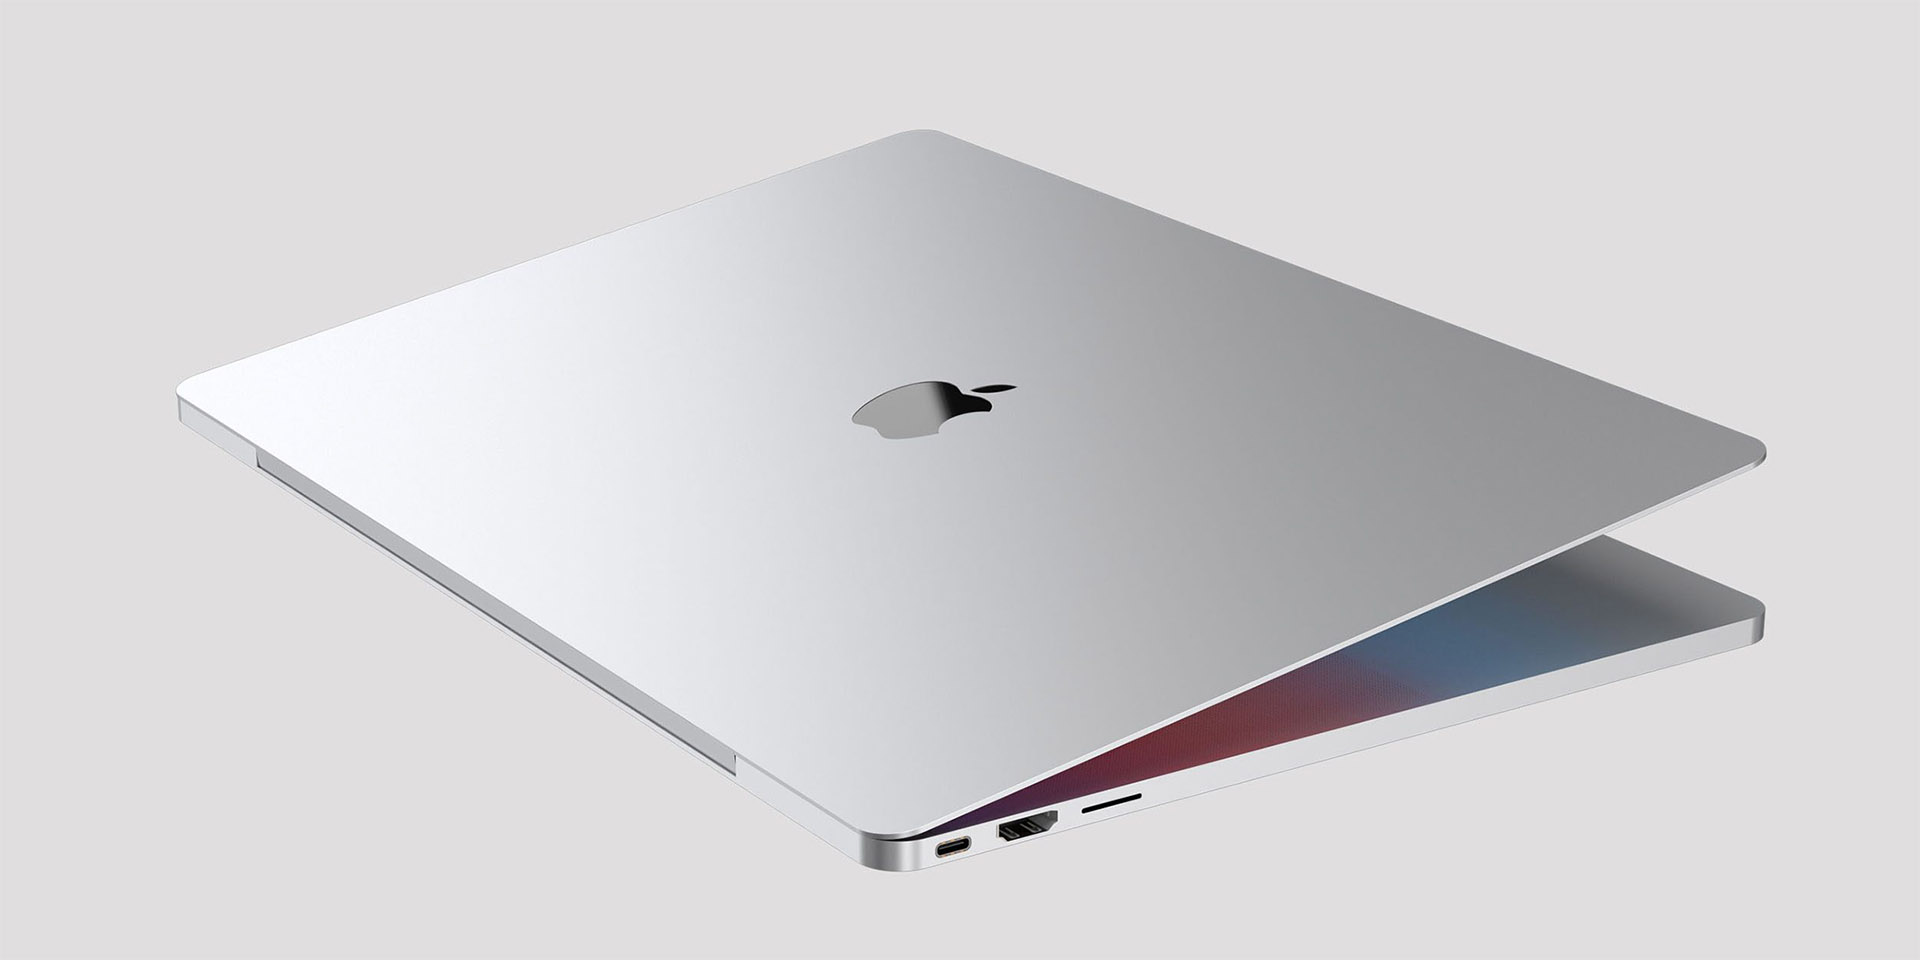 Le nouveau MacBook Pro, l'ordinateur portable le plus performant